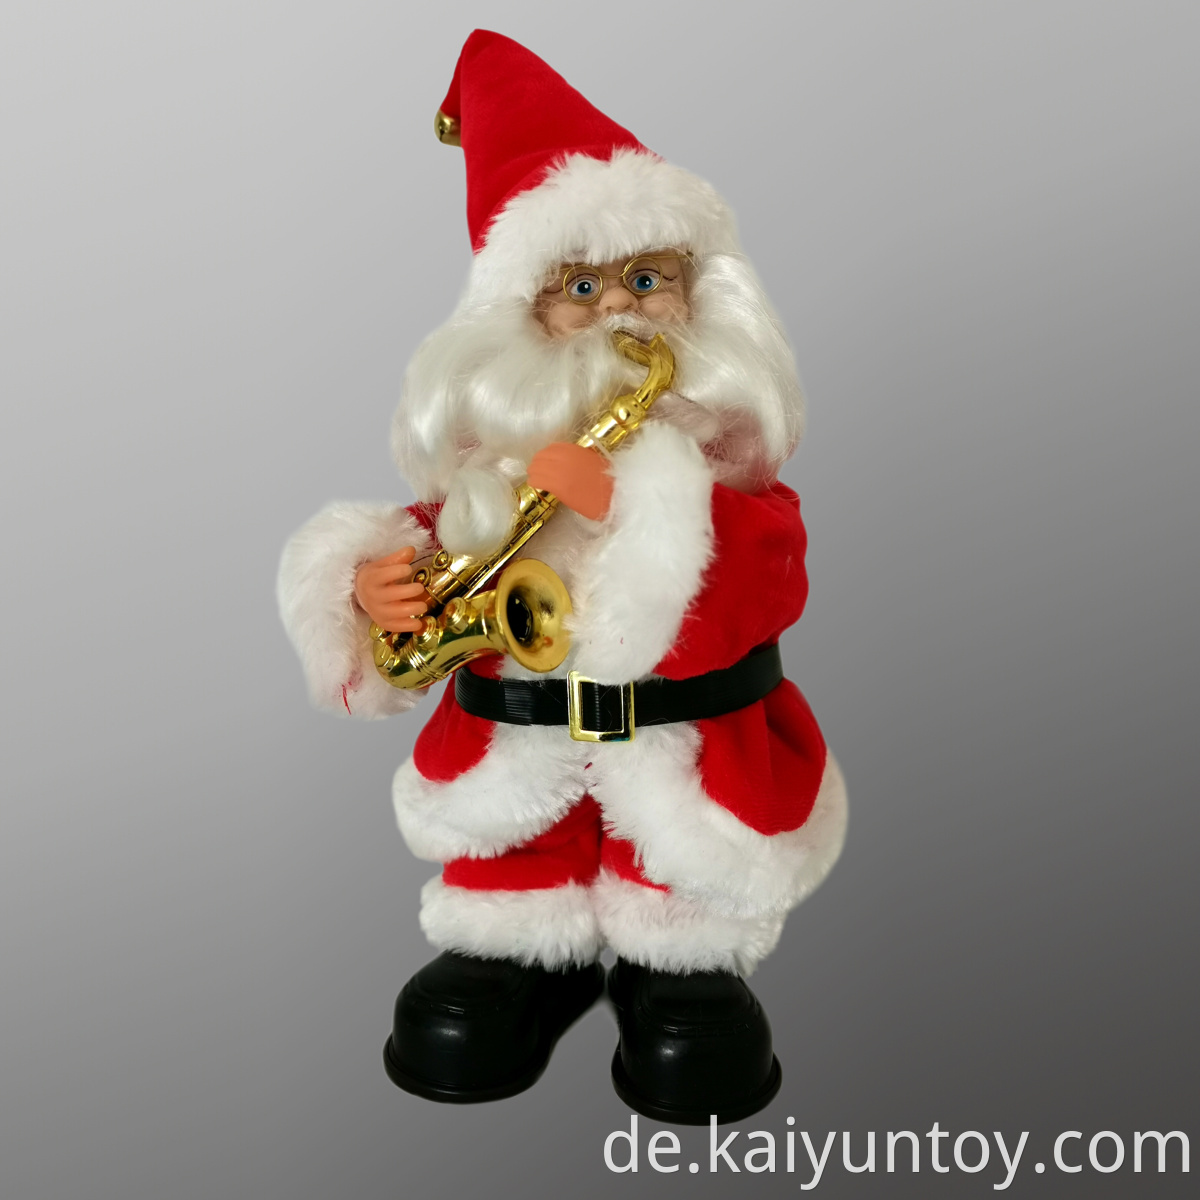 Musical Santa Claus